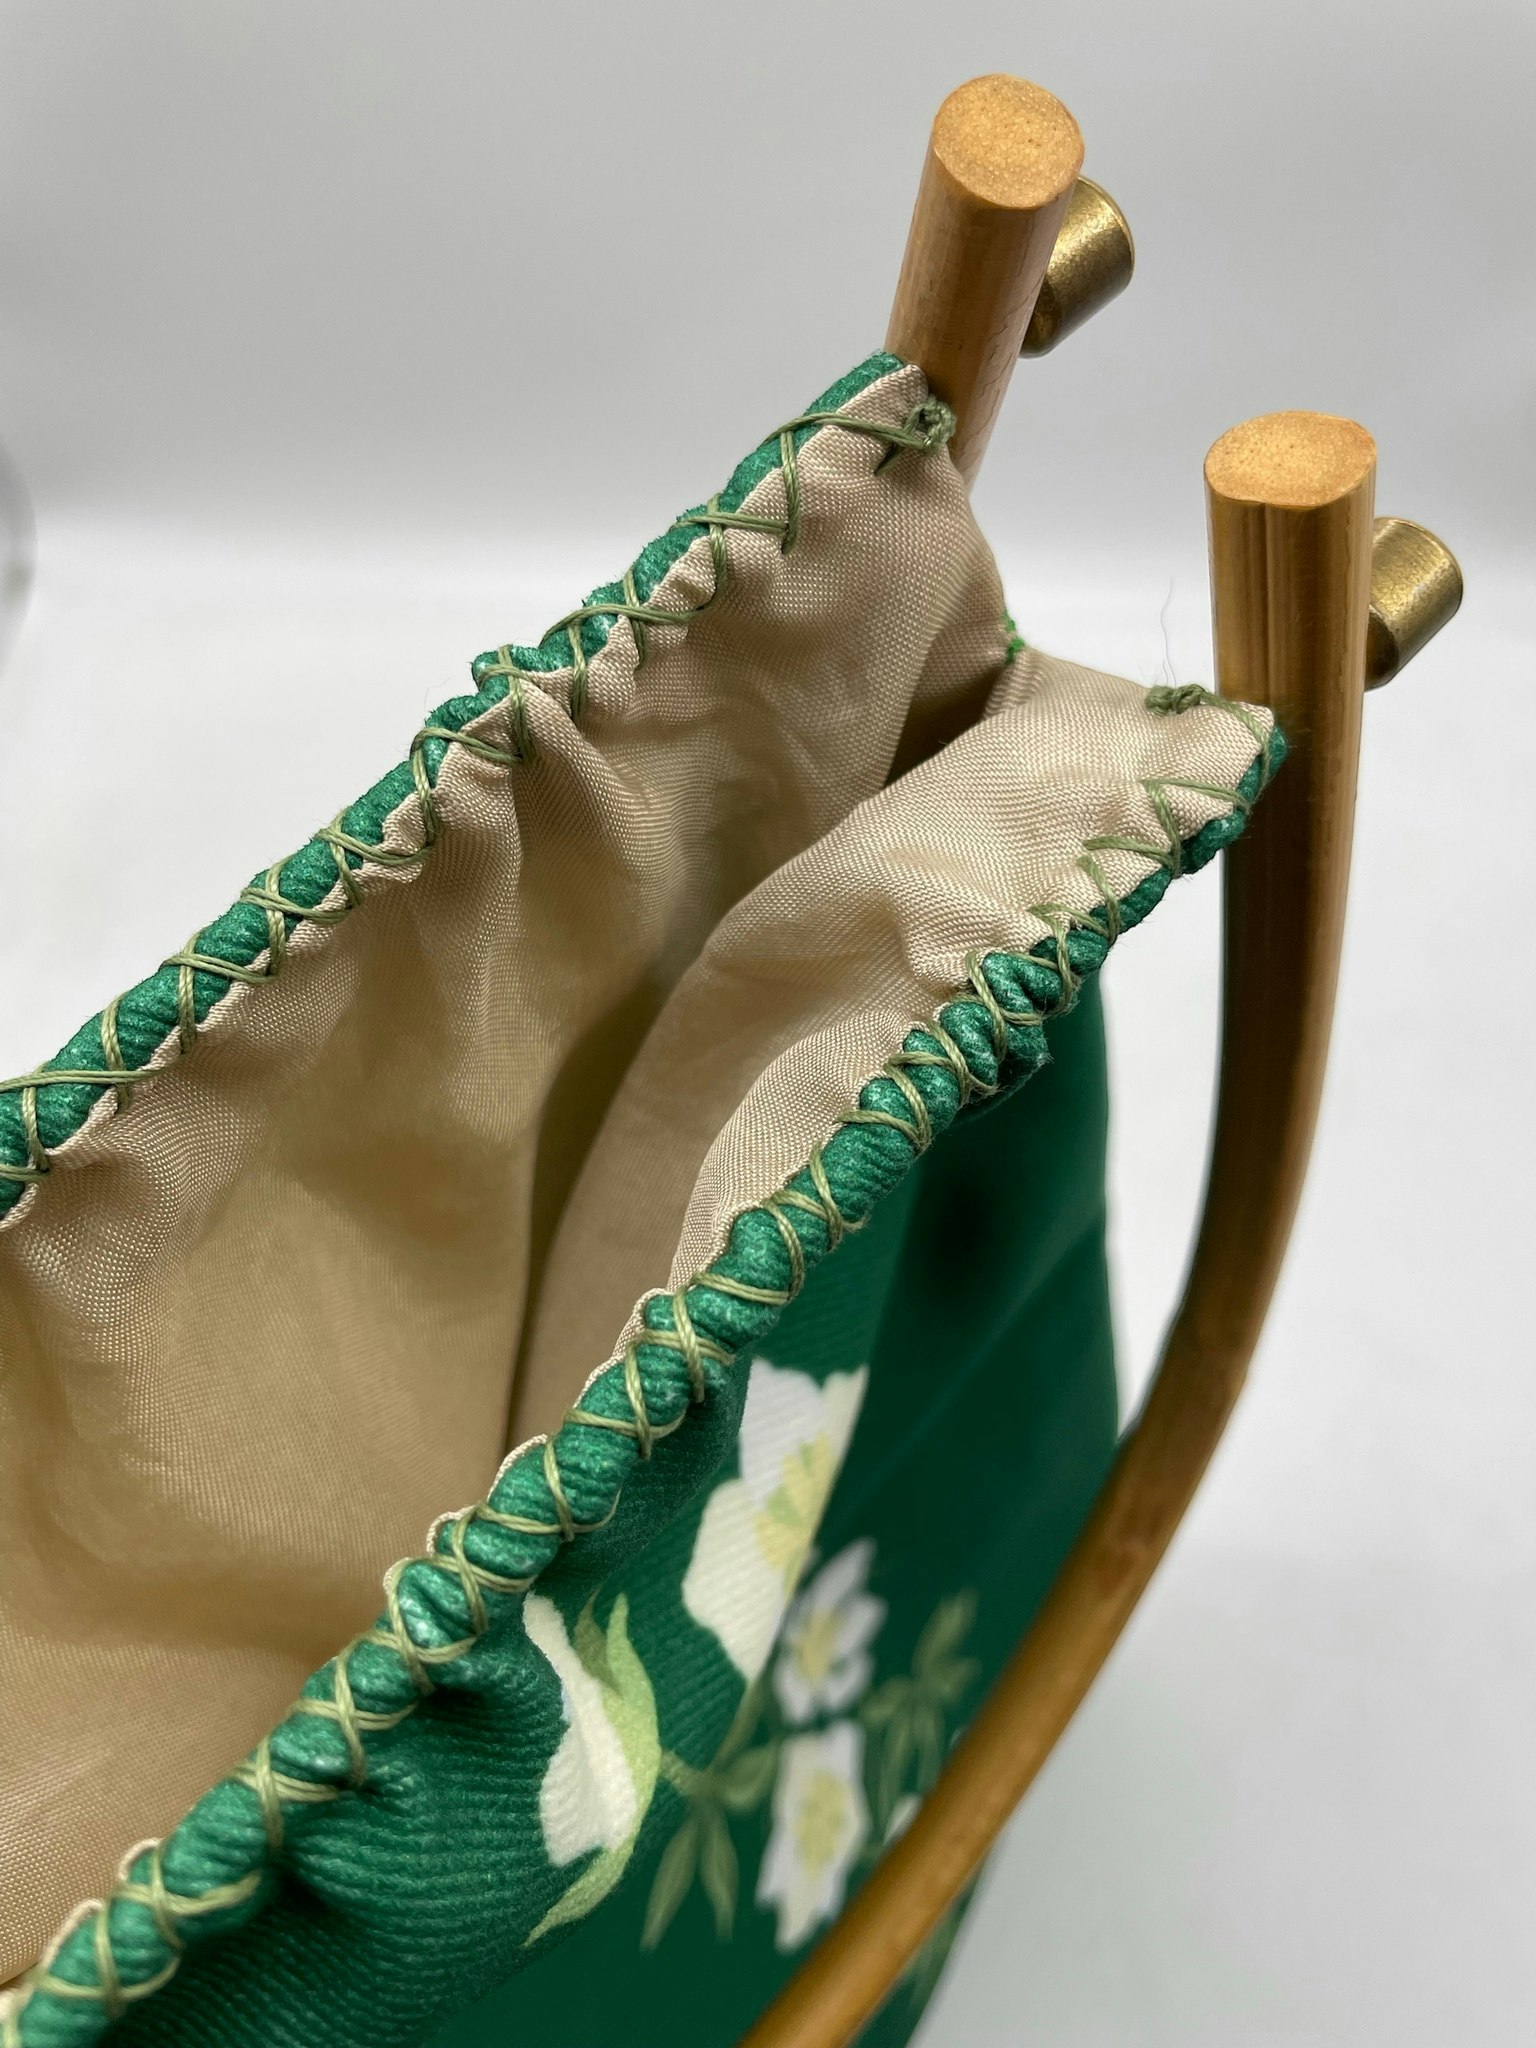 bärpåse väska hantverk Helleborus julros mönsterdesign textildesign gots hållbart grön förvaring